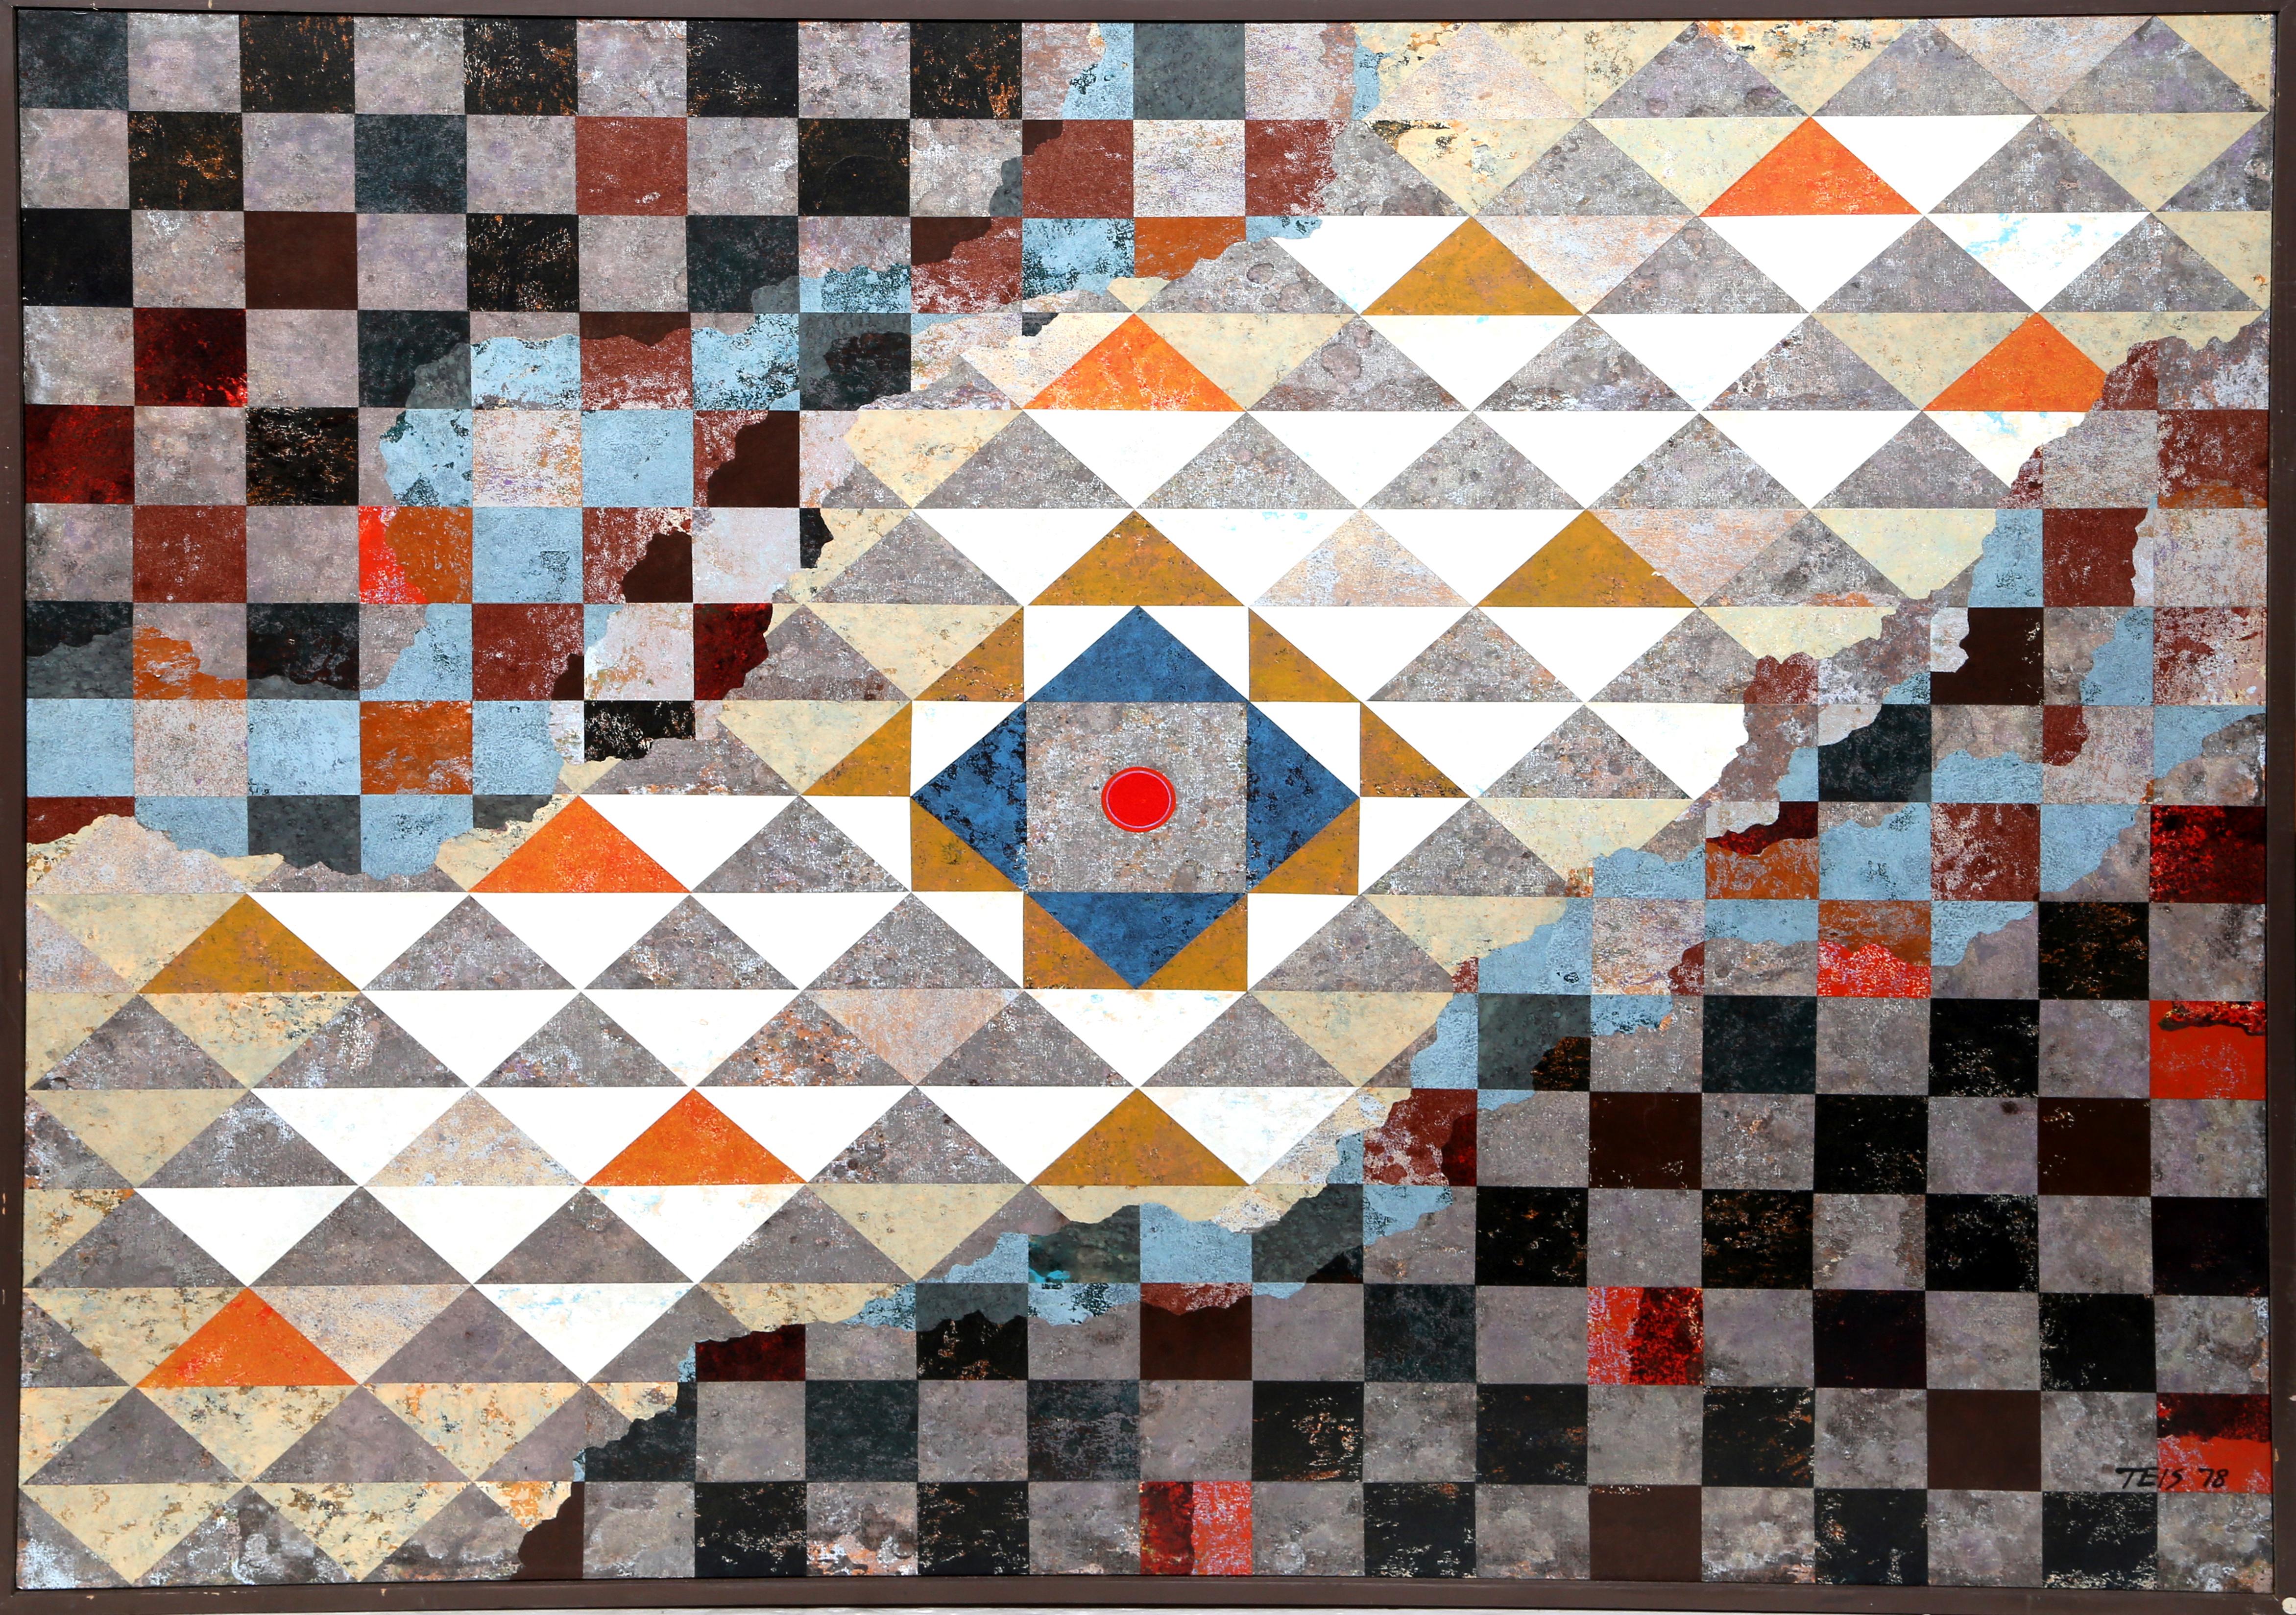 Artiste : Dan Teis, américain (1925 - 2002)
Titre : Crête géométrique II
Année : 1978
Moyen : Acrylique sur toile, signé à droite.
Taille : 48 x 60 in. (121,92 x 152,4 cm)
Taille du cadre : 49.5 x 61.5 pouces